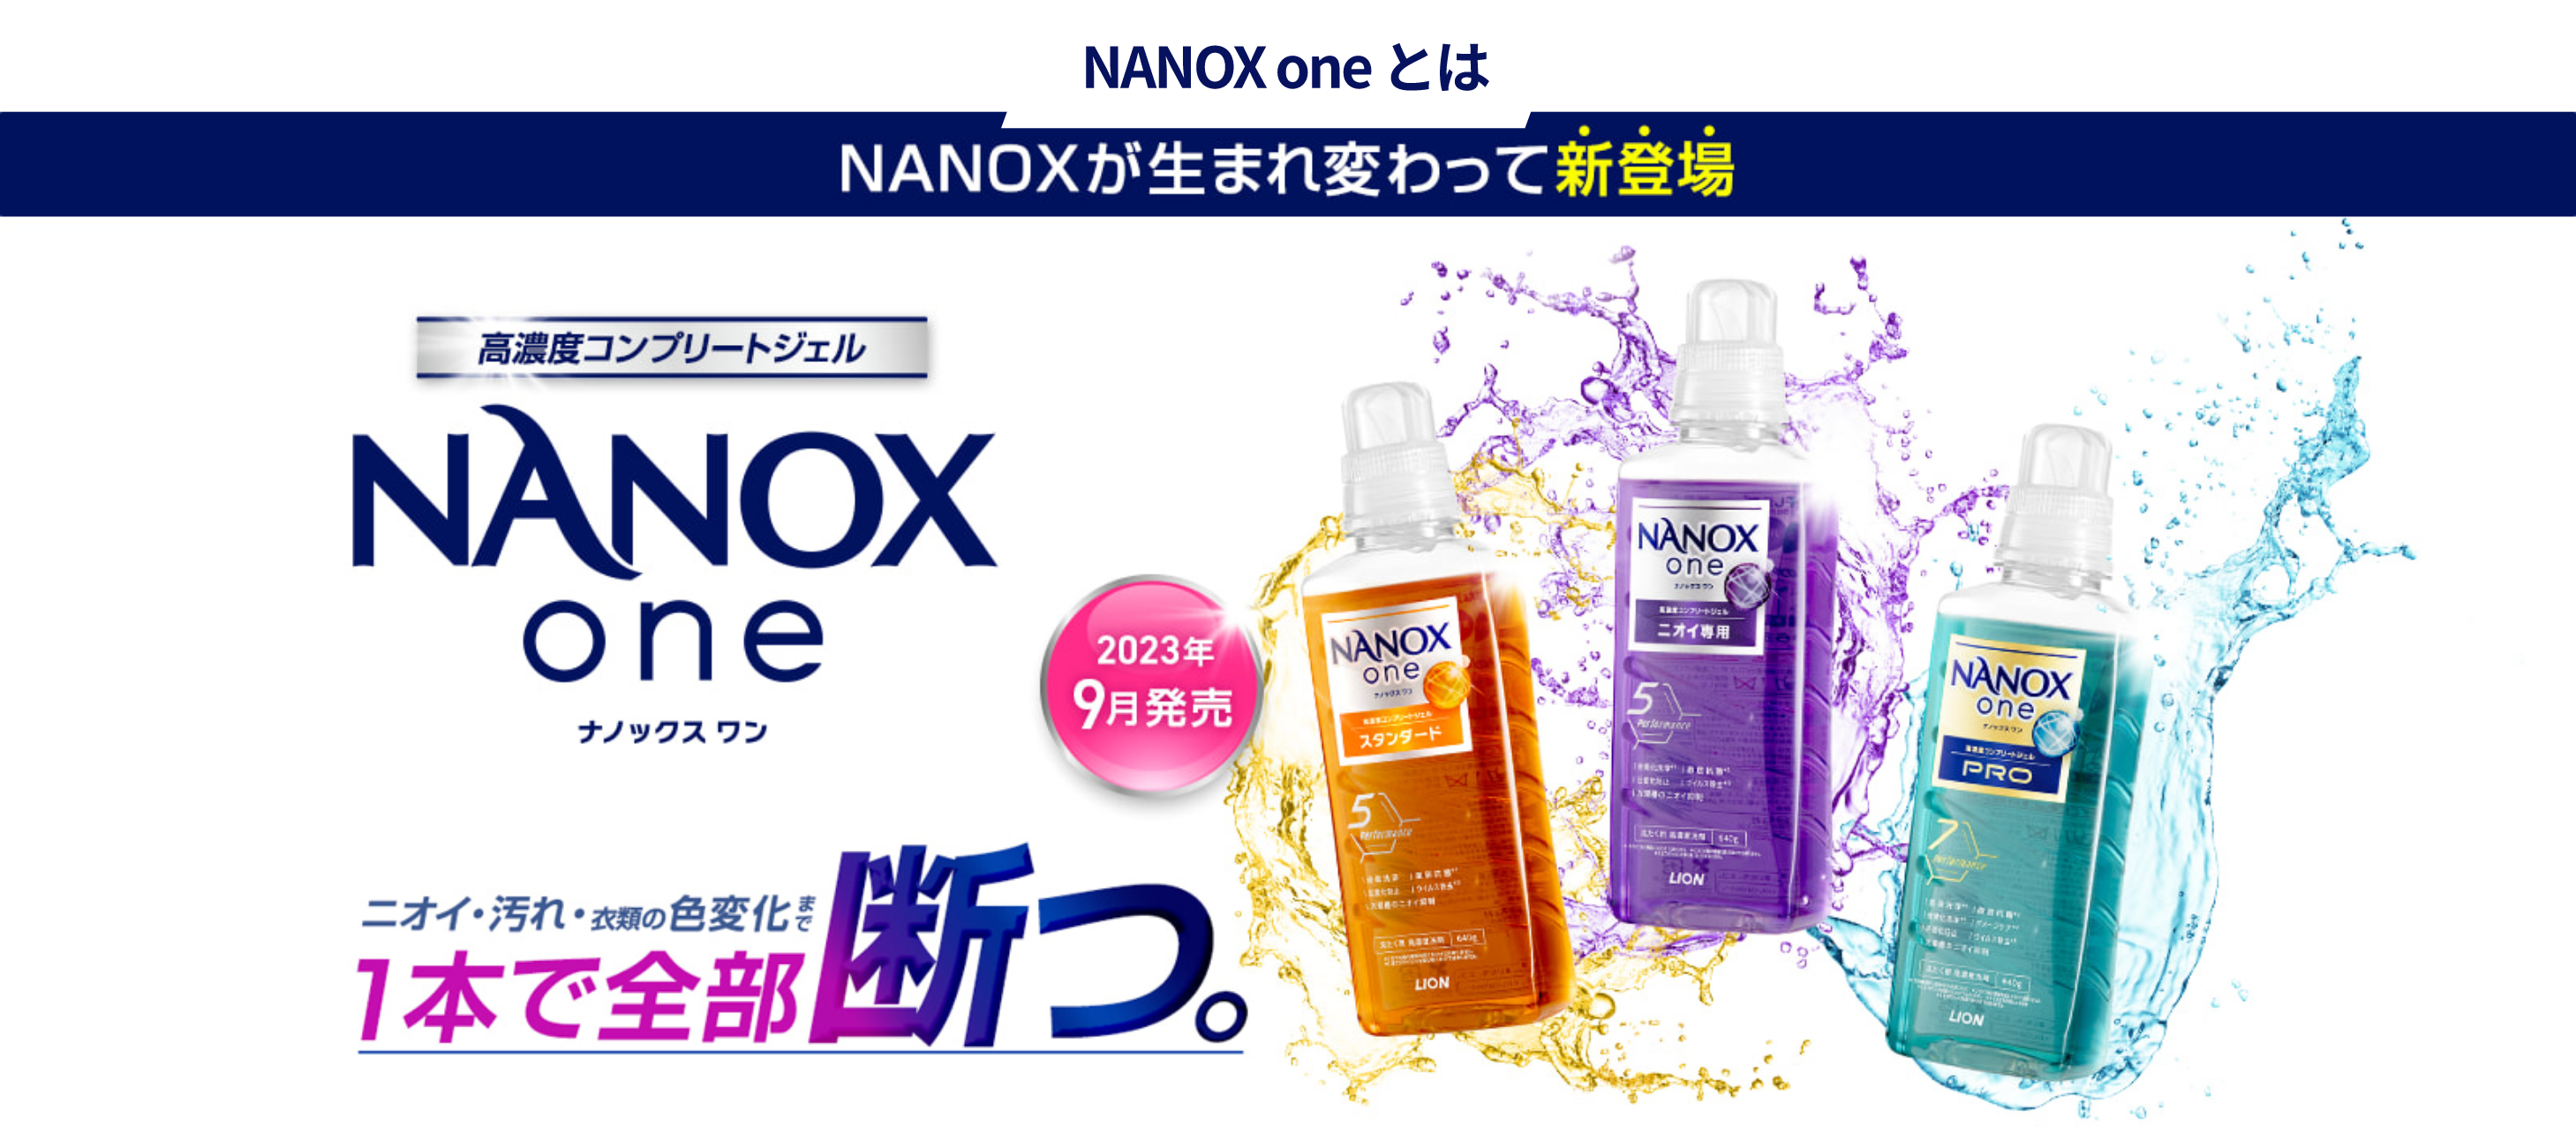 NANOX one とは NANOXが生まれ変わって新登場 高濃度コンプリートジェル NANOX one ナノックス ワン ニオイ・汚れ・衣類の色変化まで1本で全部断つ。